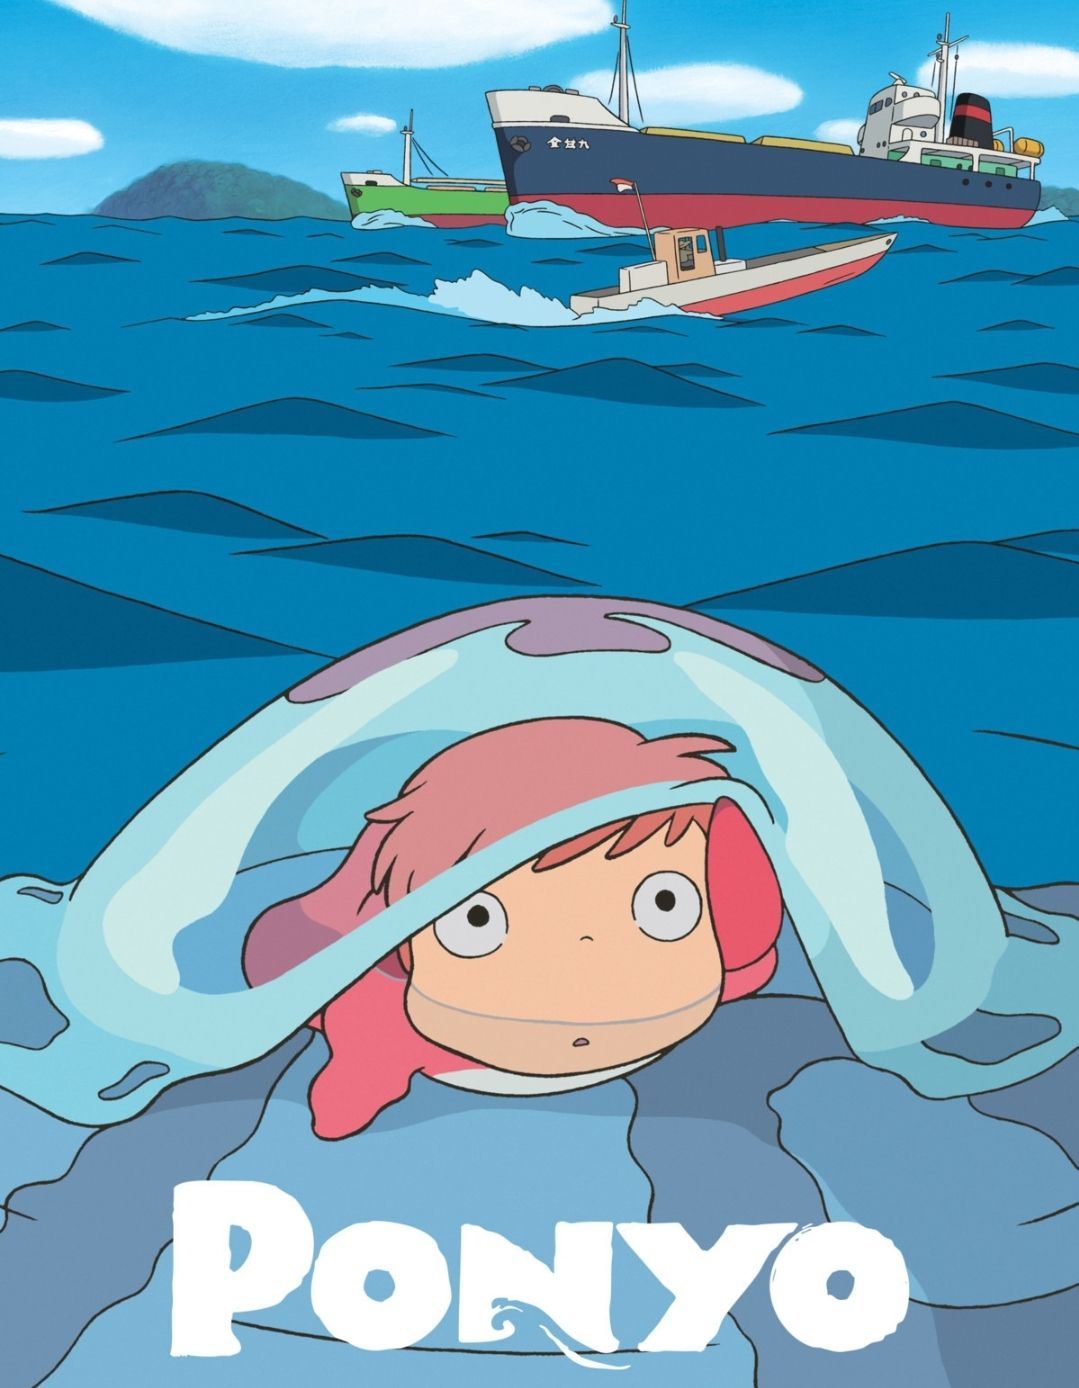 ดูหนังออนไลน์ฟรี Ponyo On The Cliff By The Sea (2008) โปเนียว ธิดาสมุทรผจญภัย พากย์ไทย